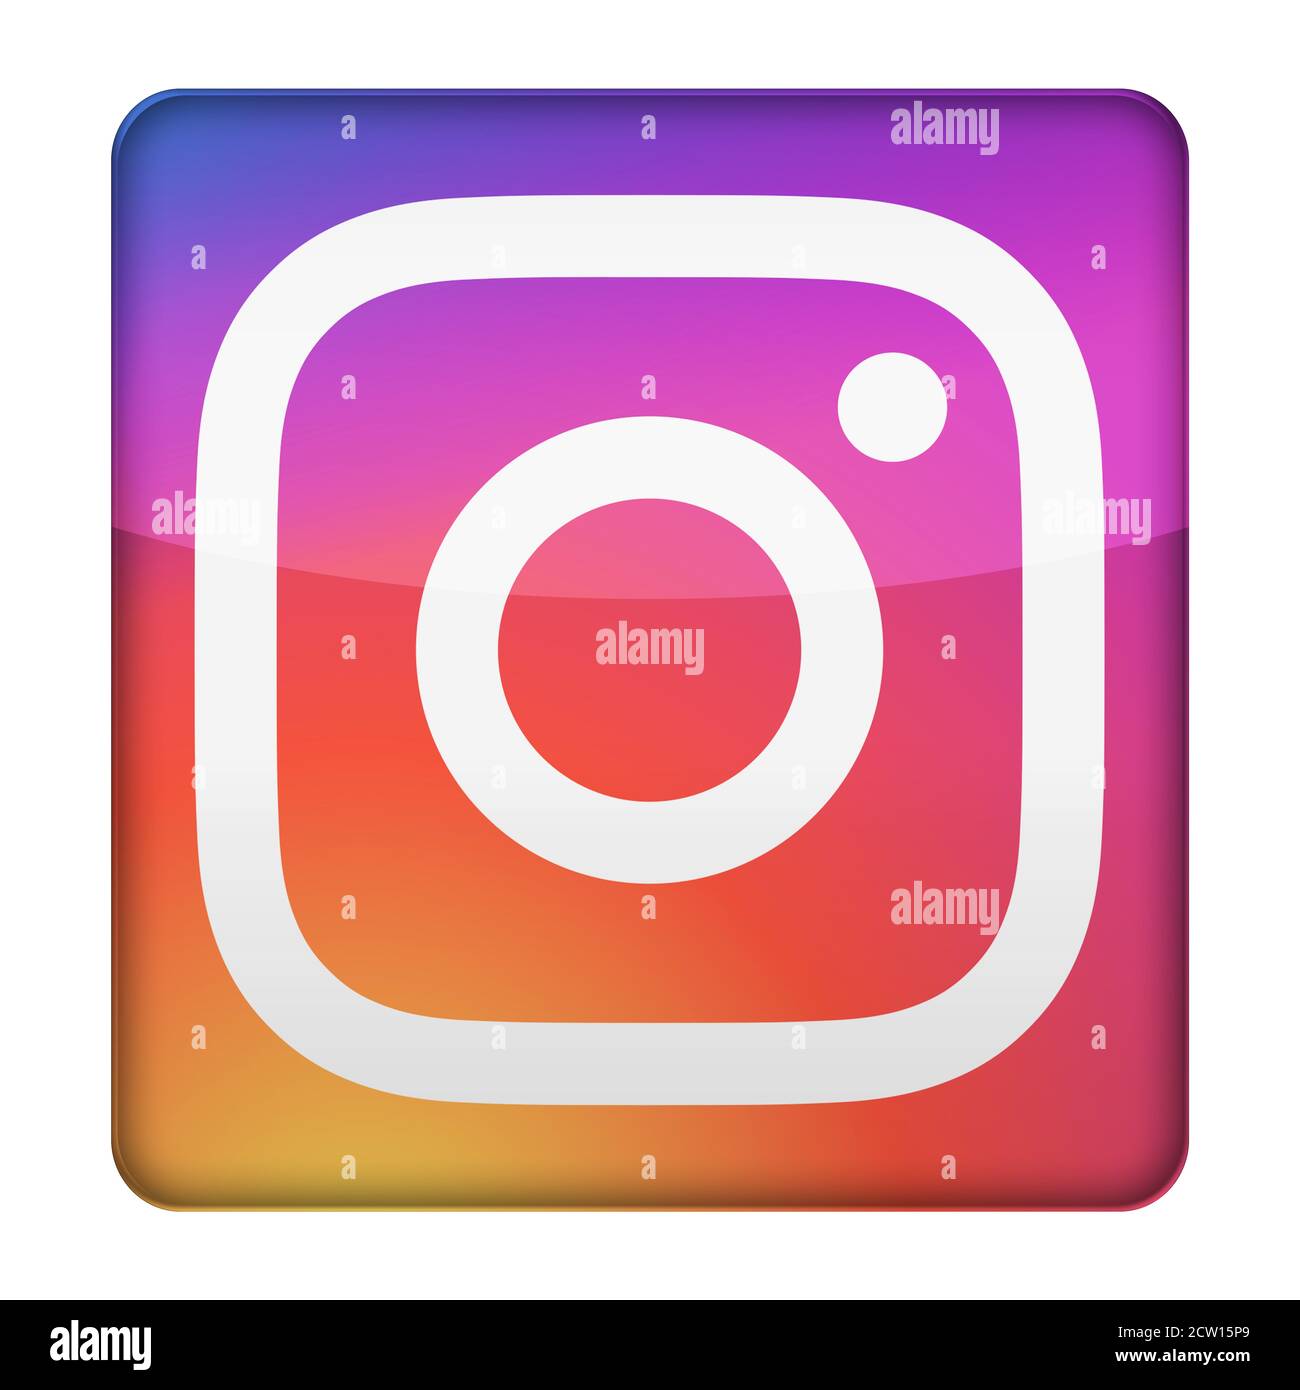 Instagram logo icon Stock Photo